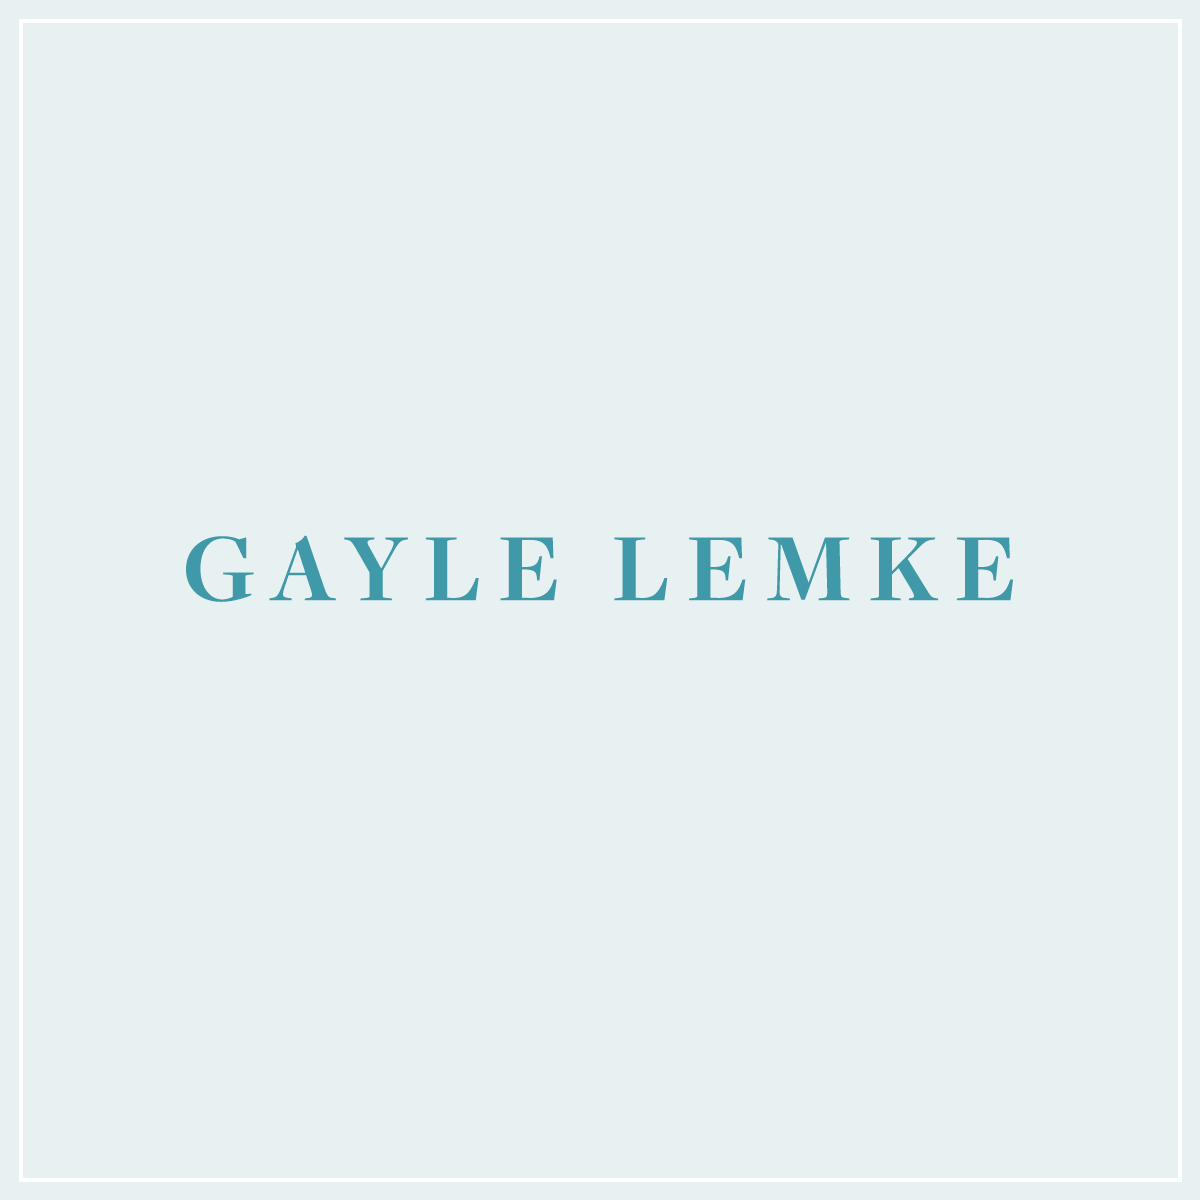 gayle-lemke_logo.png